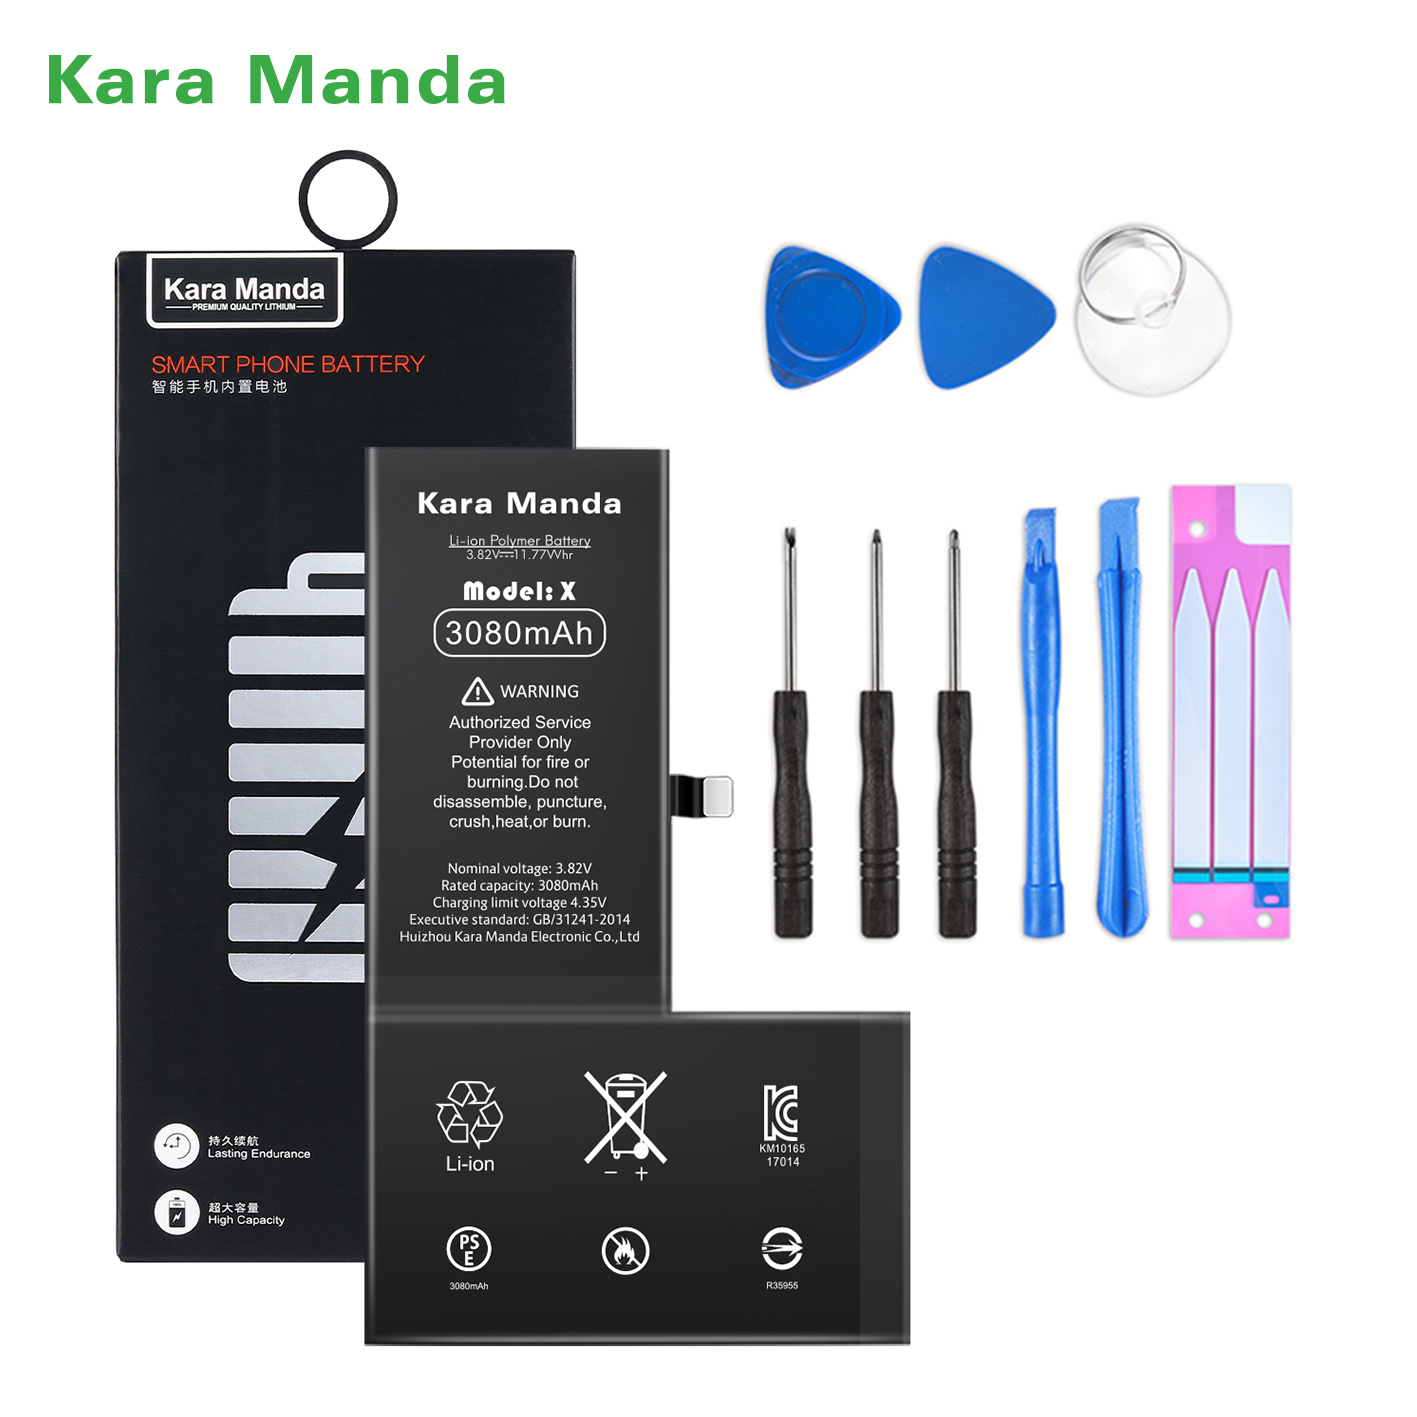 https://www.cnkaramanda.com/iphone-x-replacement-battery-high-capacity-3080mah-wholesale-oemkara-manda-product/